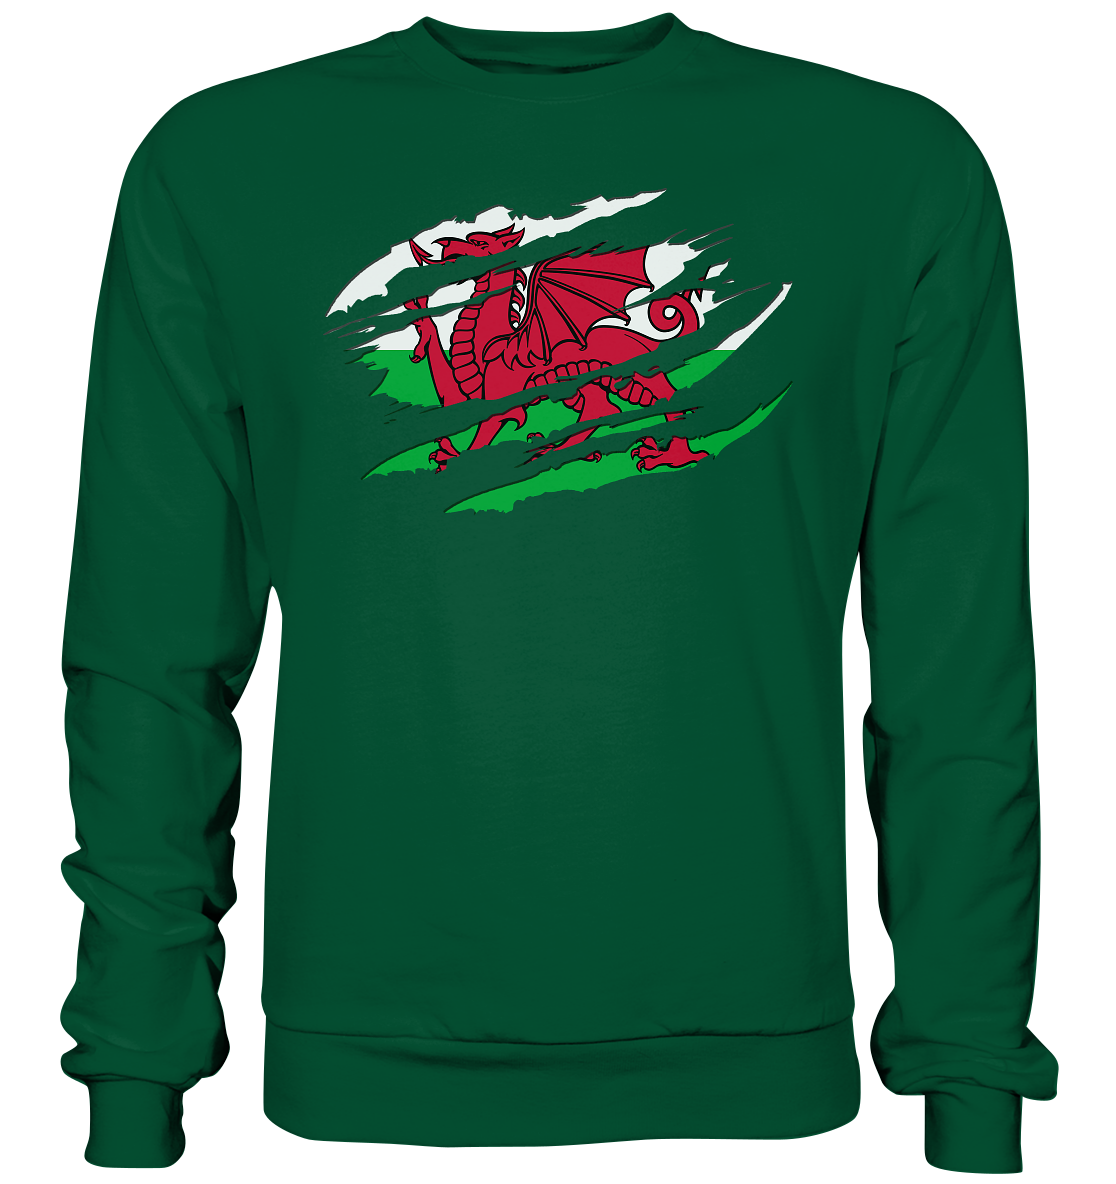 Wales "Flag Scratch" - Basic Sweatshirt